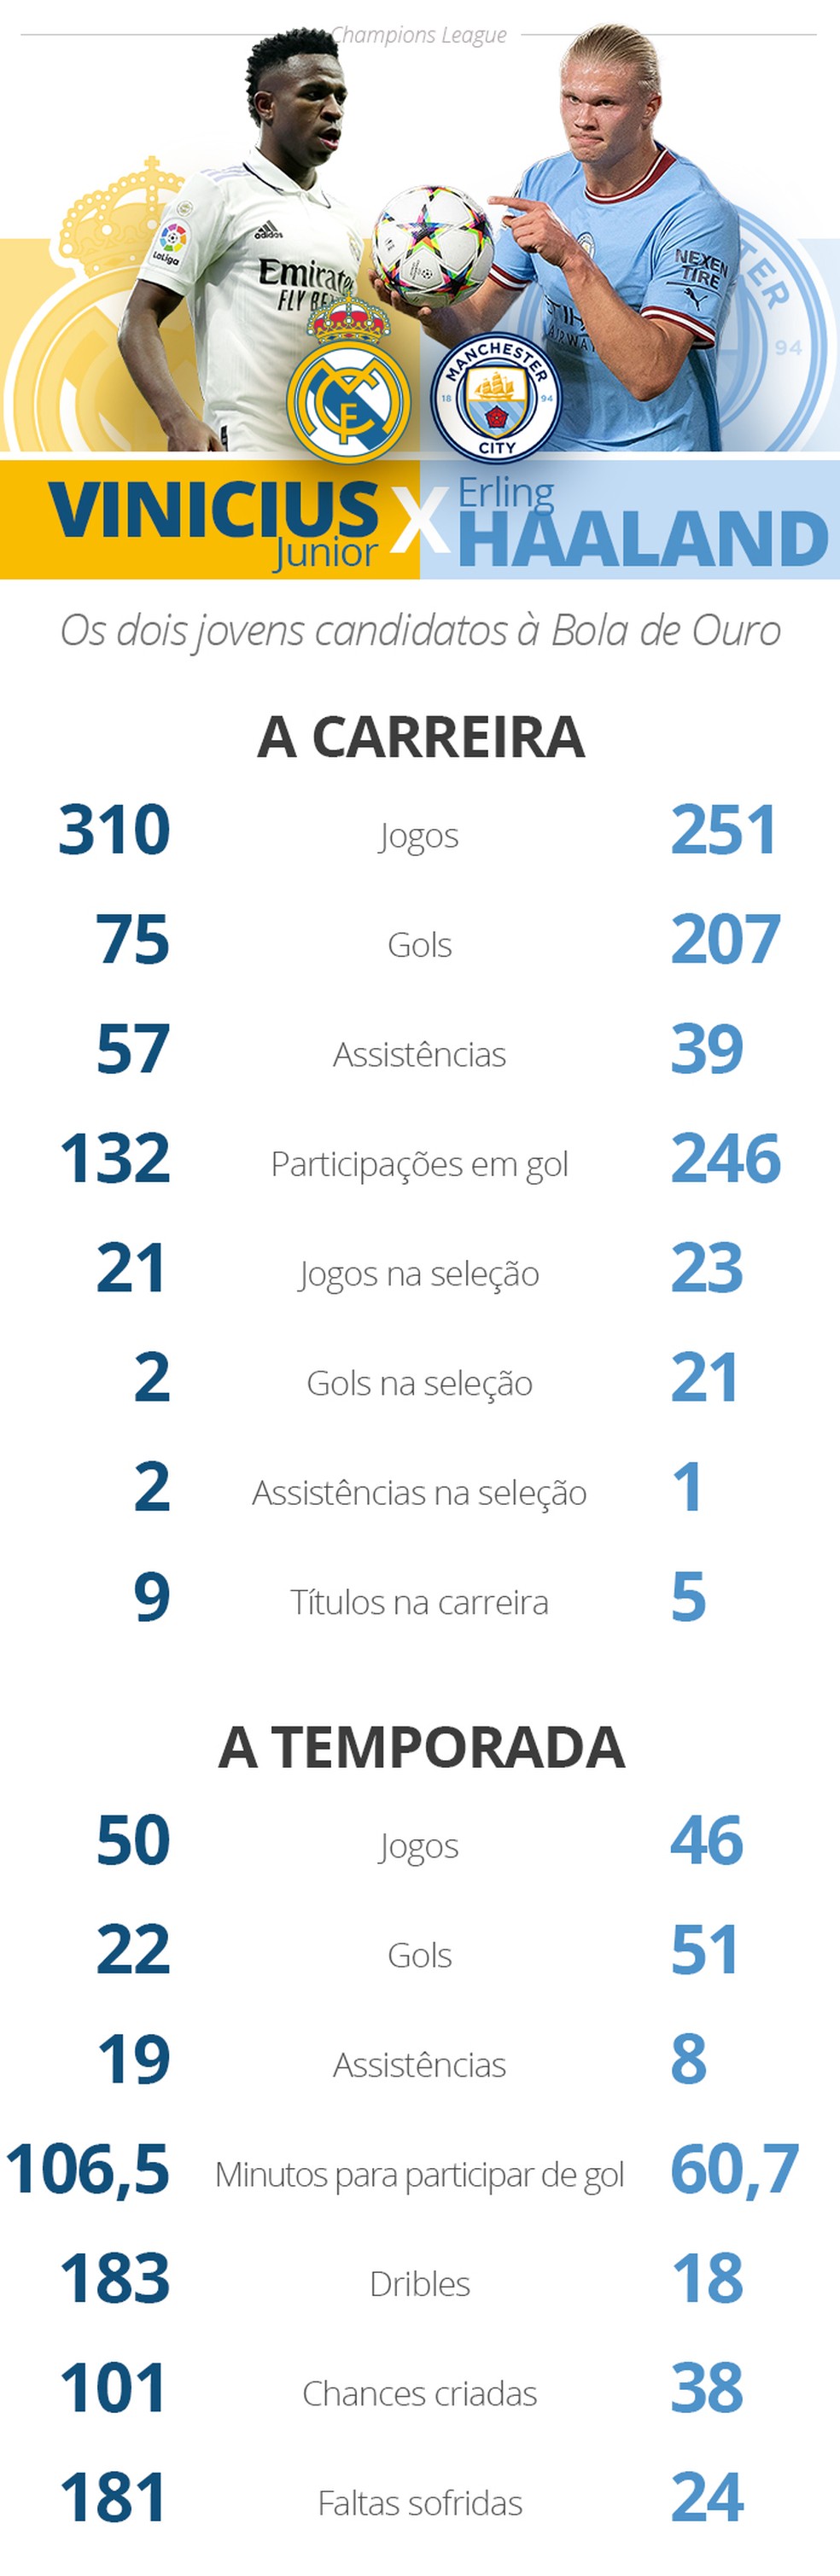 Os números de Vinicius Junior e Haaland, na carreira profissional e na temporada — Foto: Infoesporte/ge.globo